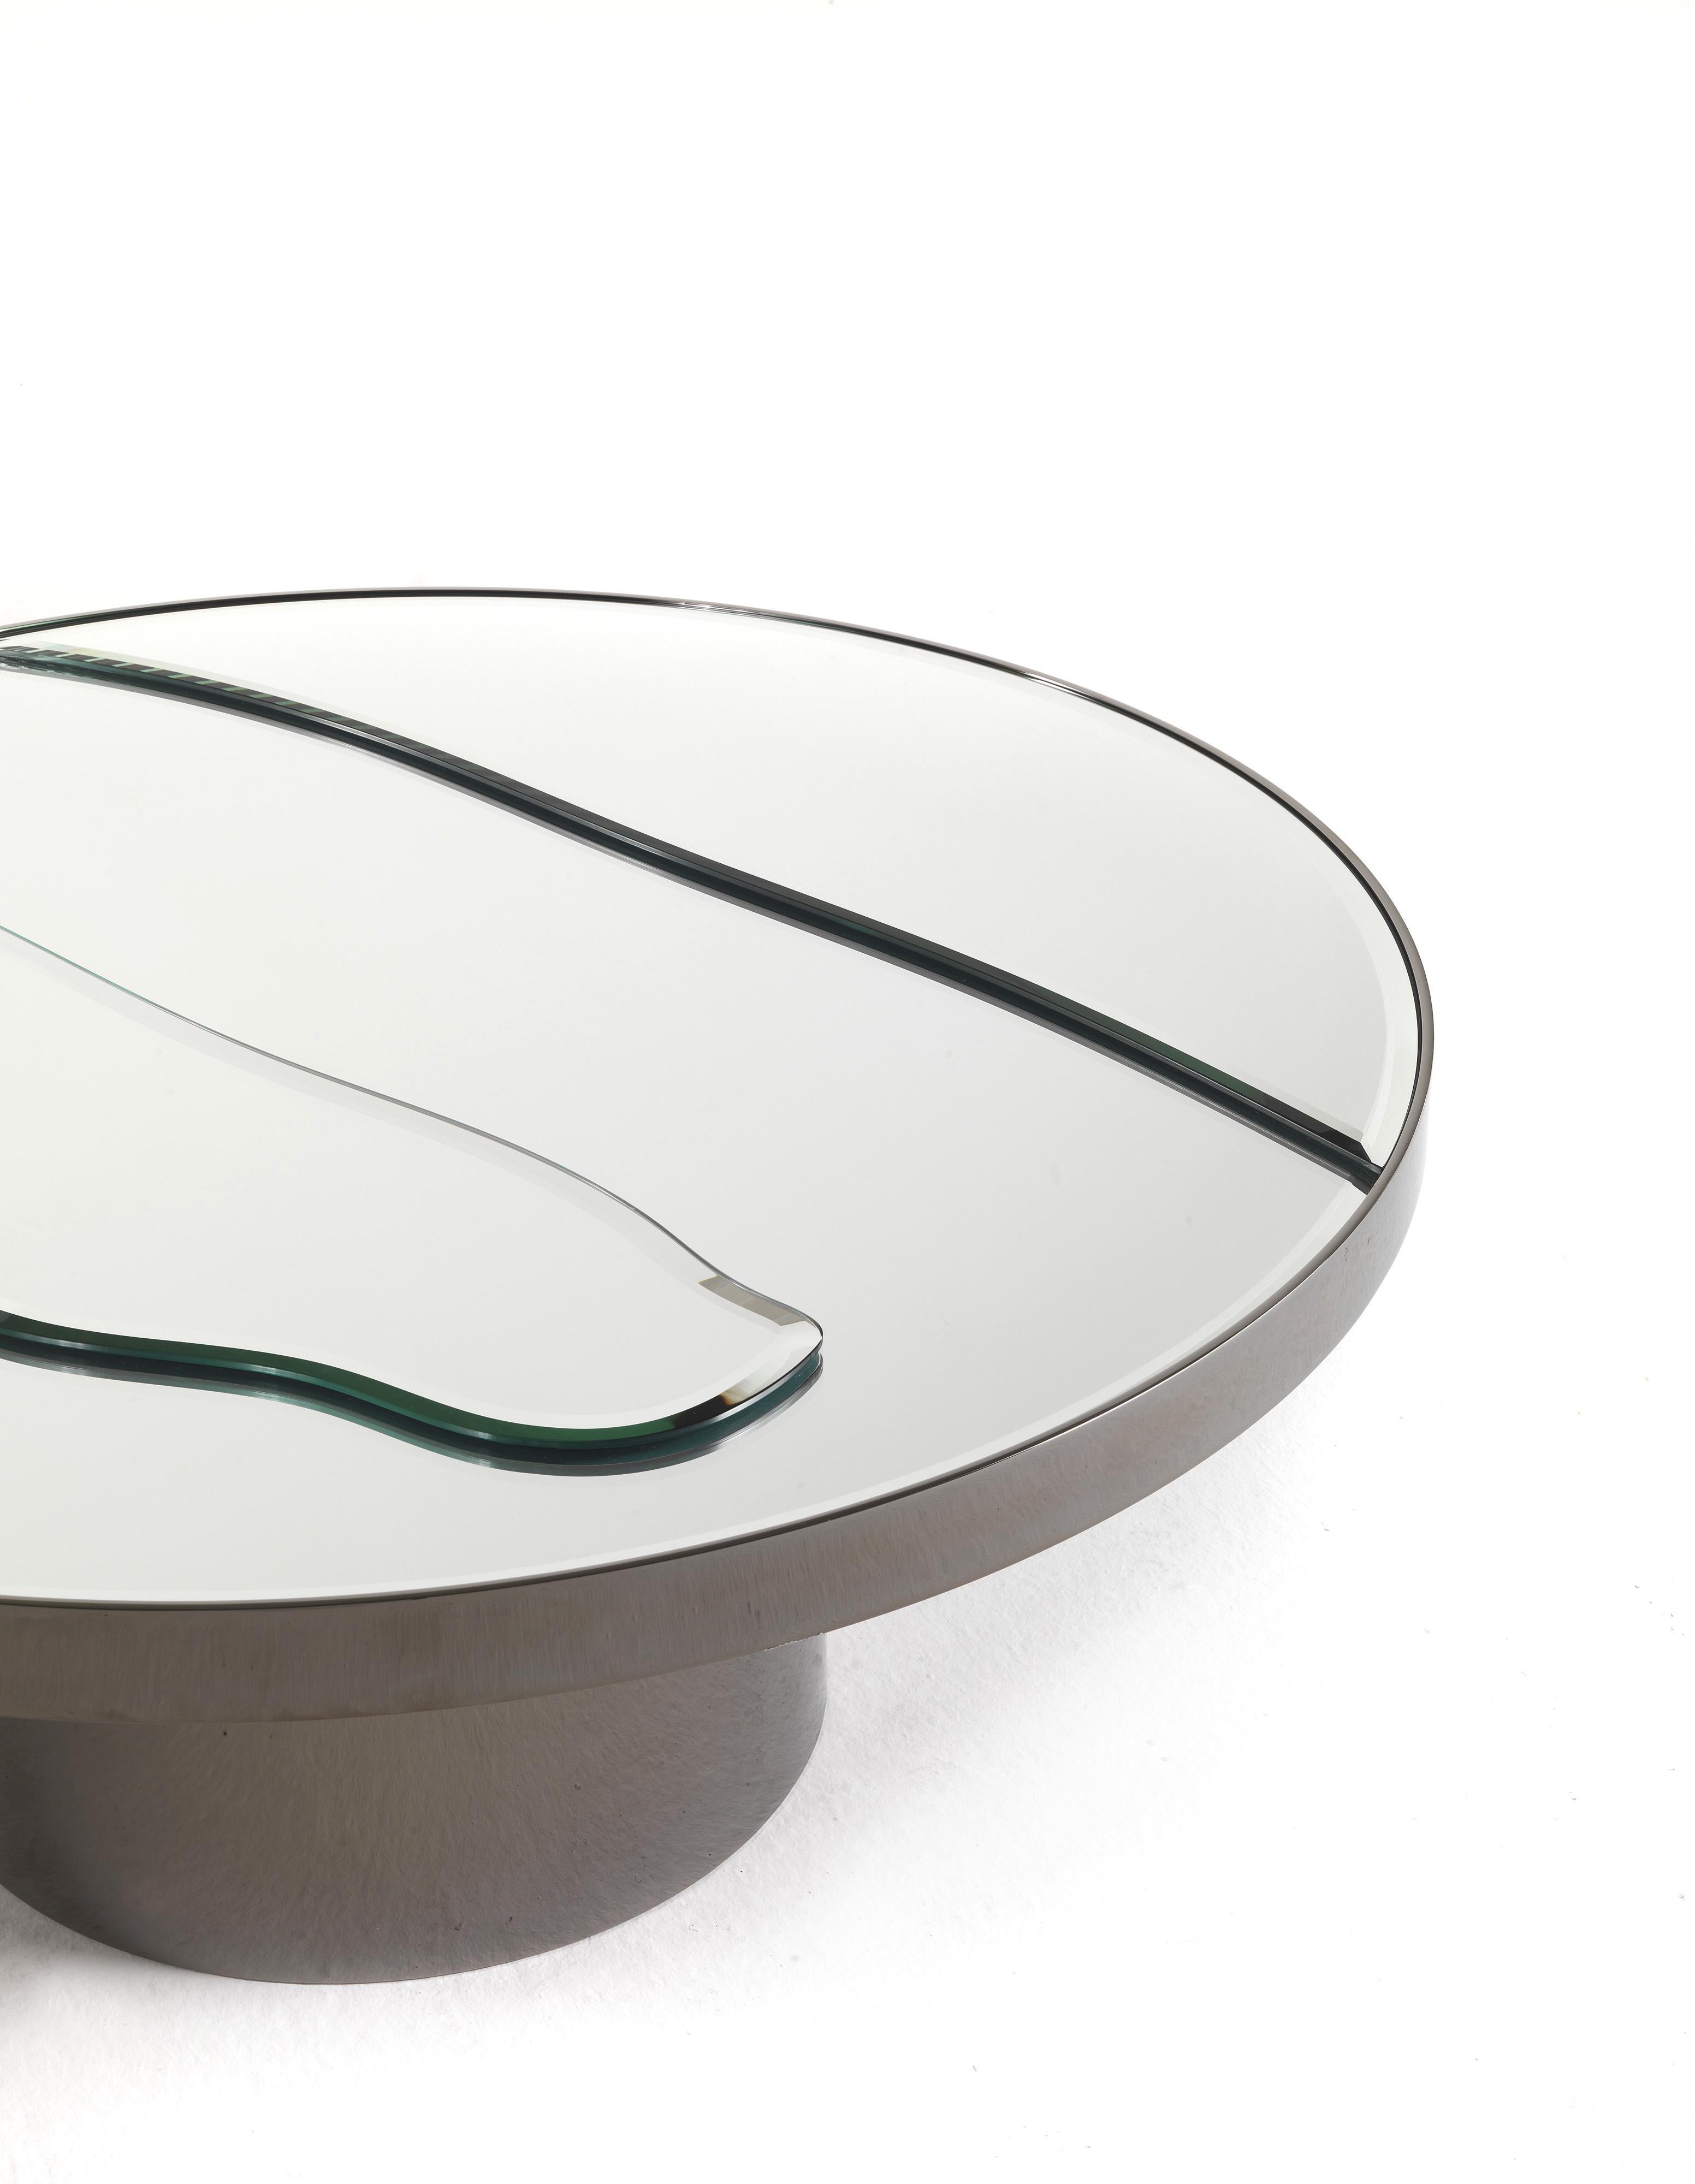 Ein Designtisch mit reinen und wesentlichen Linien. Er ist äußerst vielseitig und in einer Vielzahl von Formen und Ausführungen erhältlich.
Sahara Zentrales Tischgestell aus Metall, schwarz verchromt. Platte aus abgeschrägten Naturspiegeln.
 